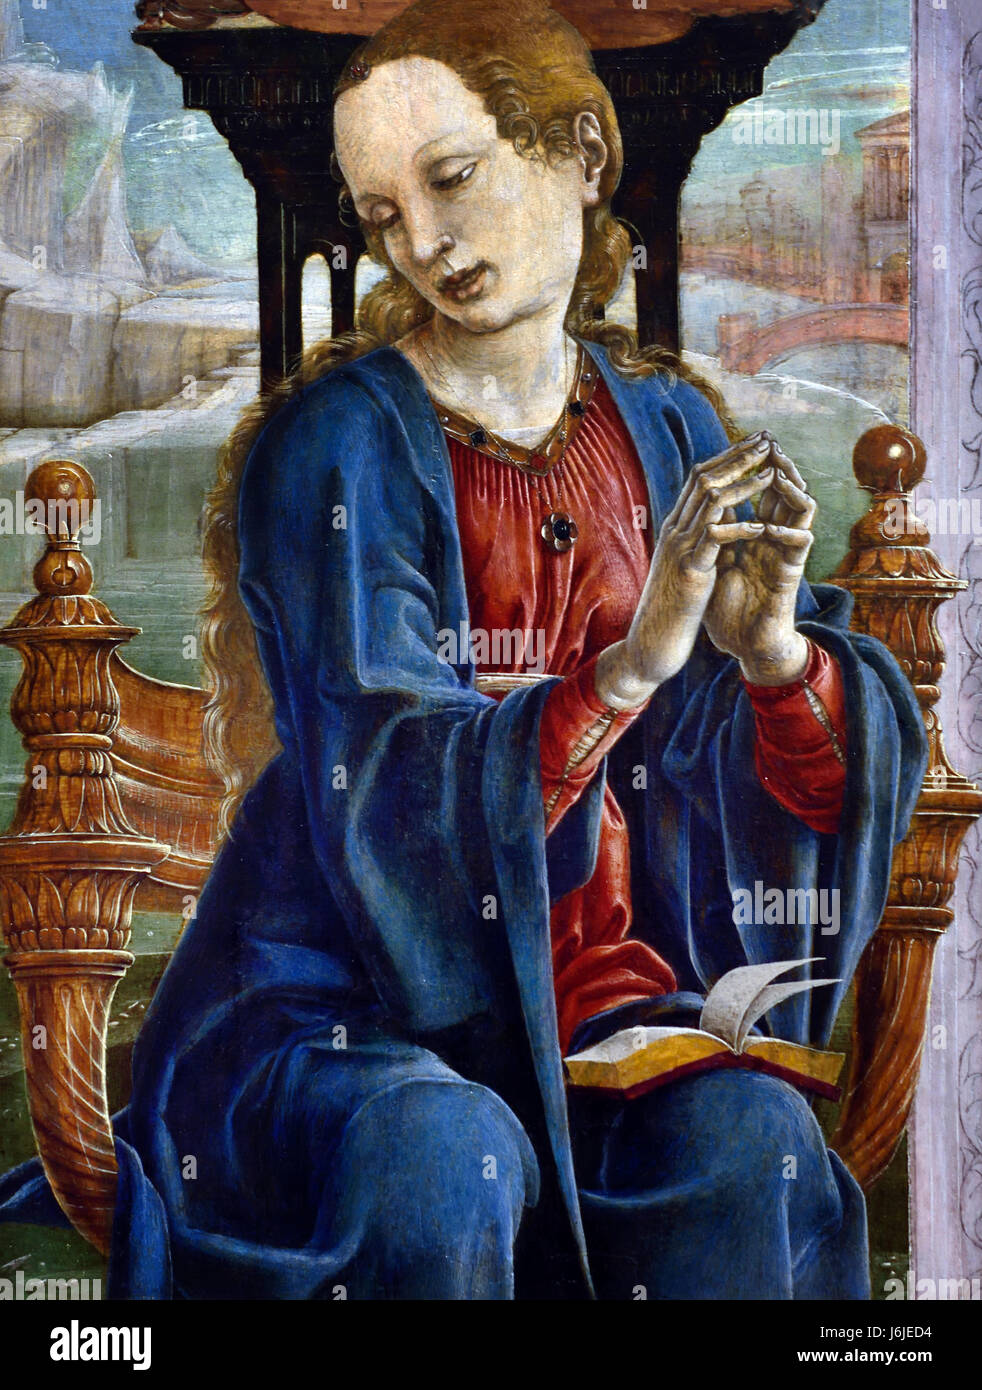 La Vierge Annunciate 1475-80 Cosimo Tura 1431 - 1495 Italie Italien l'Annonciation représente l'histoire biblique dans laquelle Archange Gabriel annonce à la Vierge Marie qu'elle a été choisie pour être la mère de Jésus.Annonciation, bénie, Vierge Marie, l'annonce par l'ange Gabriel, Marie qu'elle concevrait, porte un fils par une naissance vierge, devient la mère de Jésus-Christ, le Messie chrétien et le fils de Dieu, l'incarnation, Banque D'Images